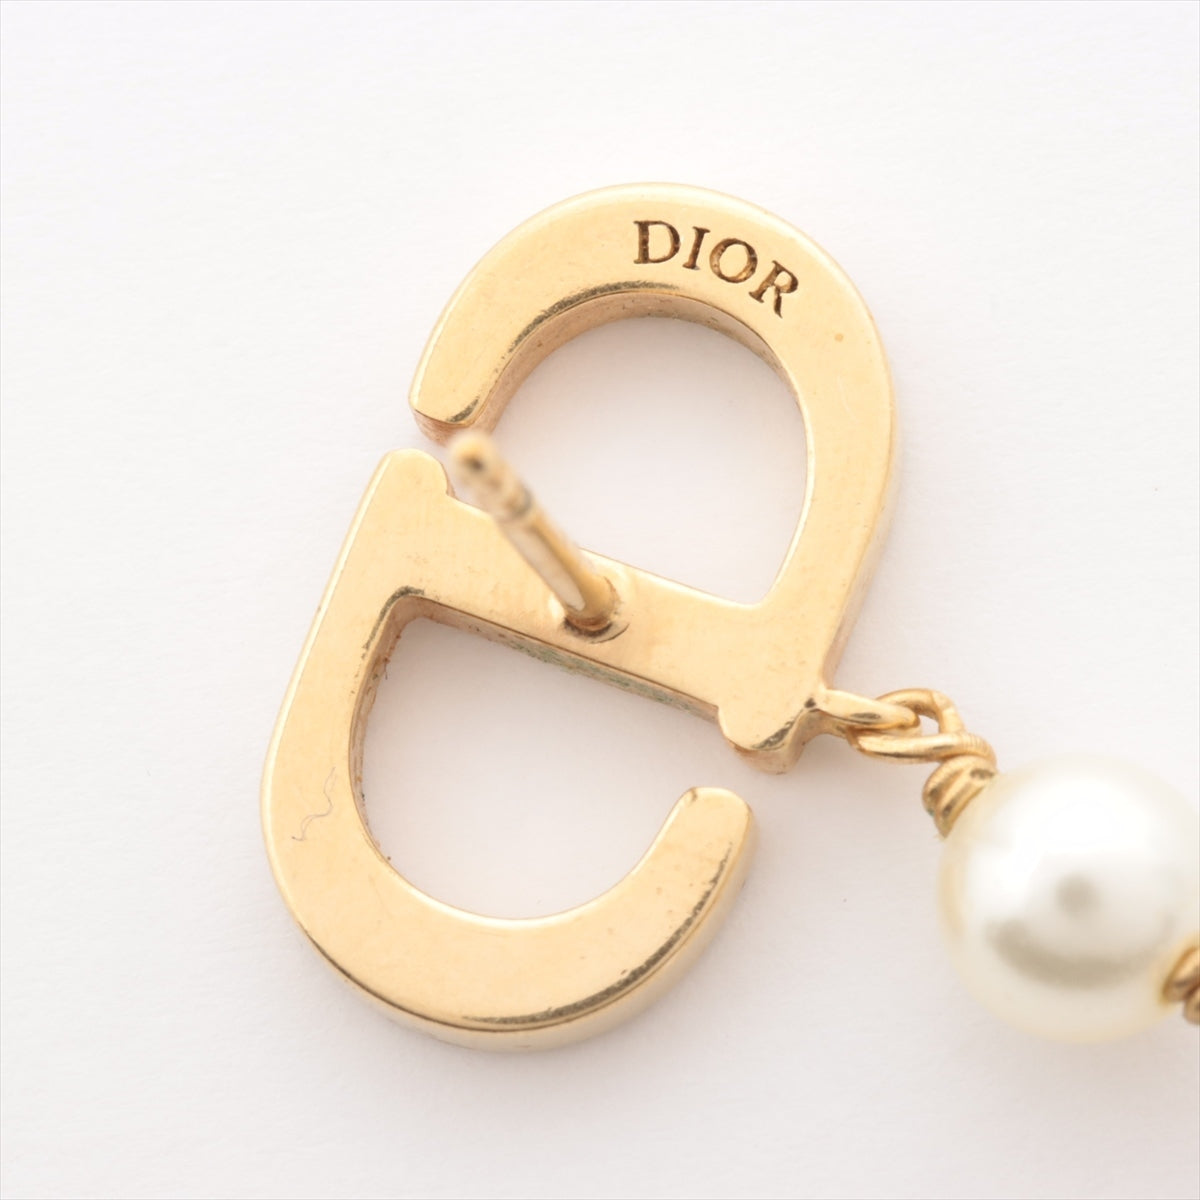 Dior / PETIT CD ピアス (メタル・レジンパール・クリスタル)ご了承下さいませ